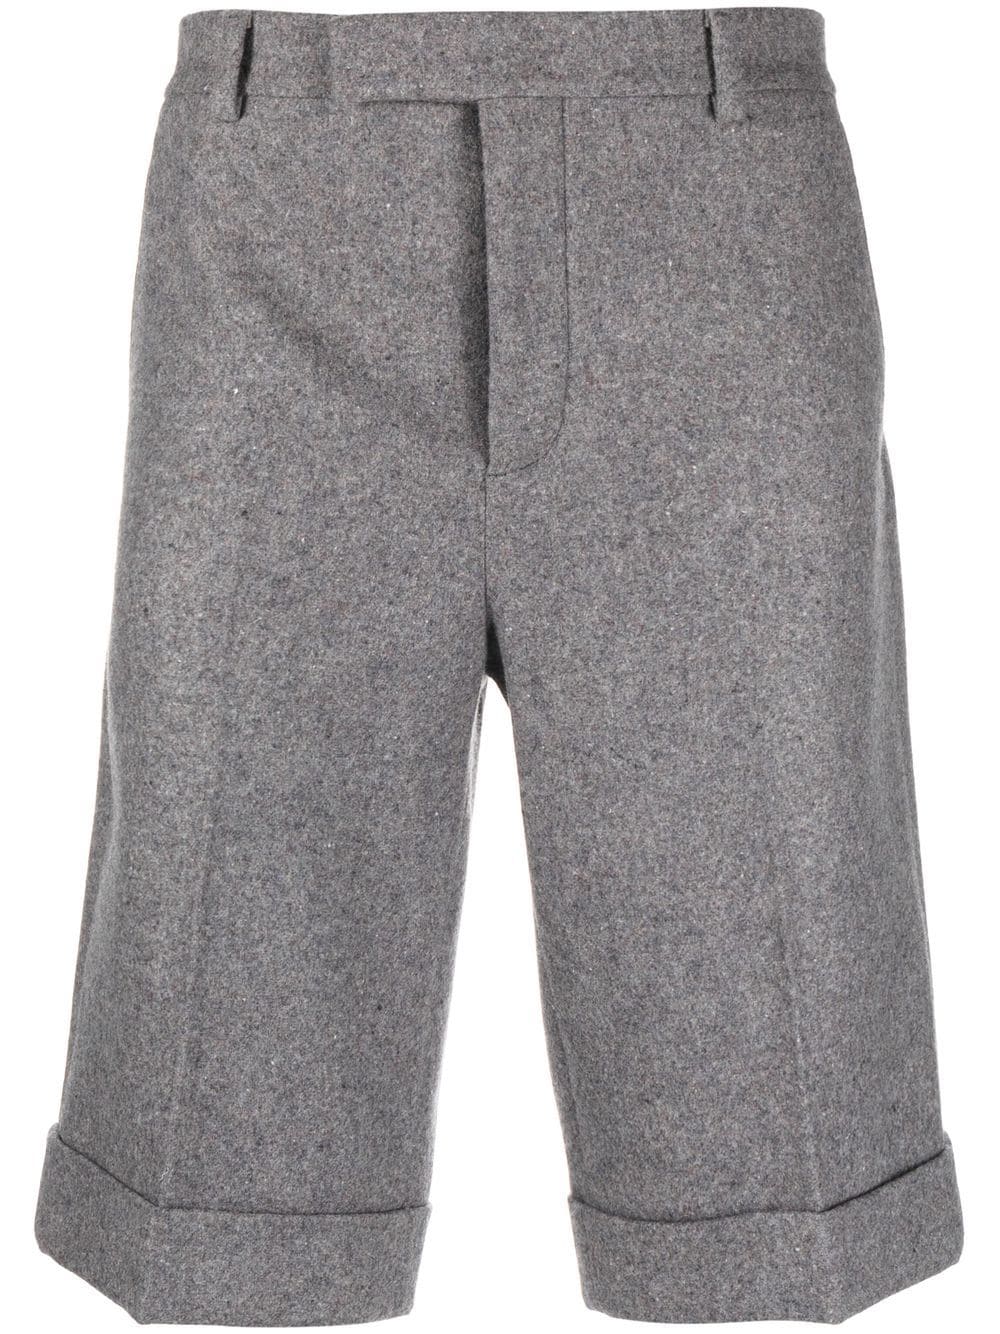 Boys Grey Wool Shorts